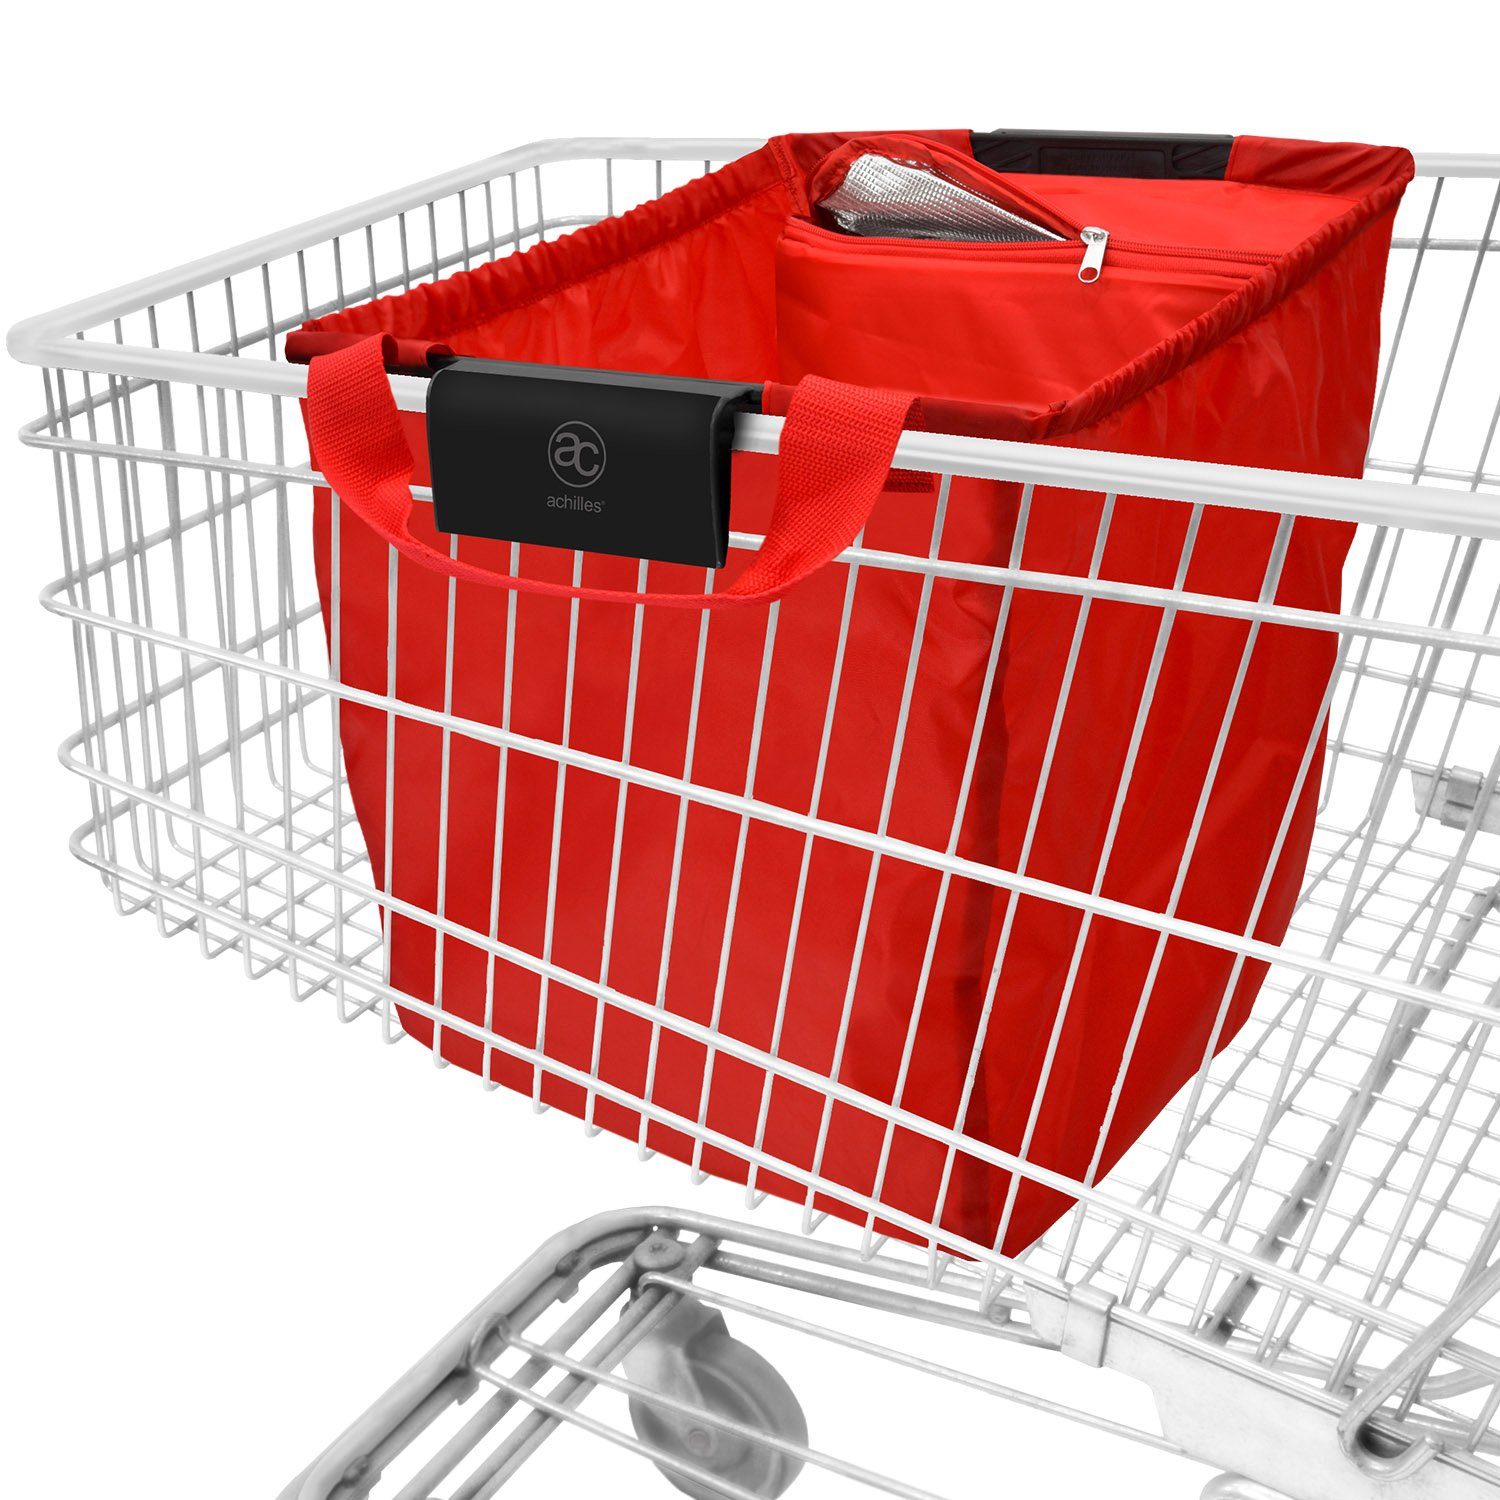 achilles Einkaufsbeutel »Easy-Carrier Einkaufswagentasche mit Kühlfunktion  und 3 Flaschenfächern«, 40 l online kaufen | OTTO